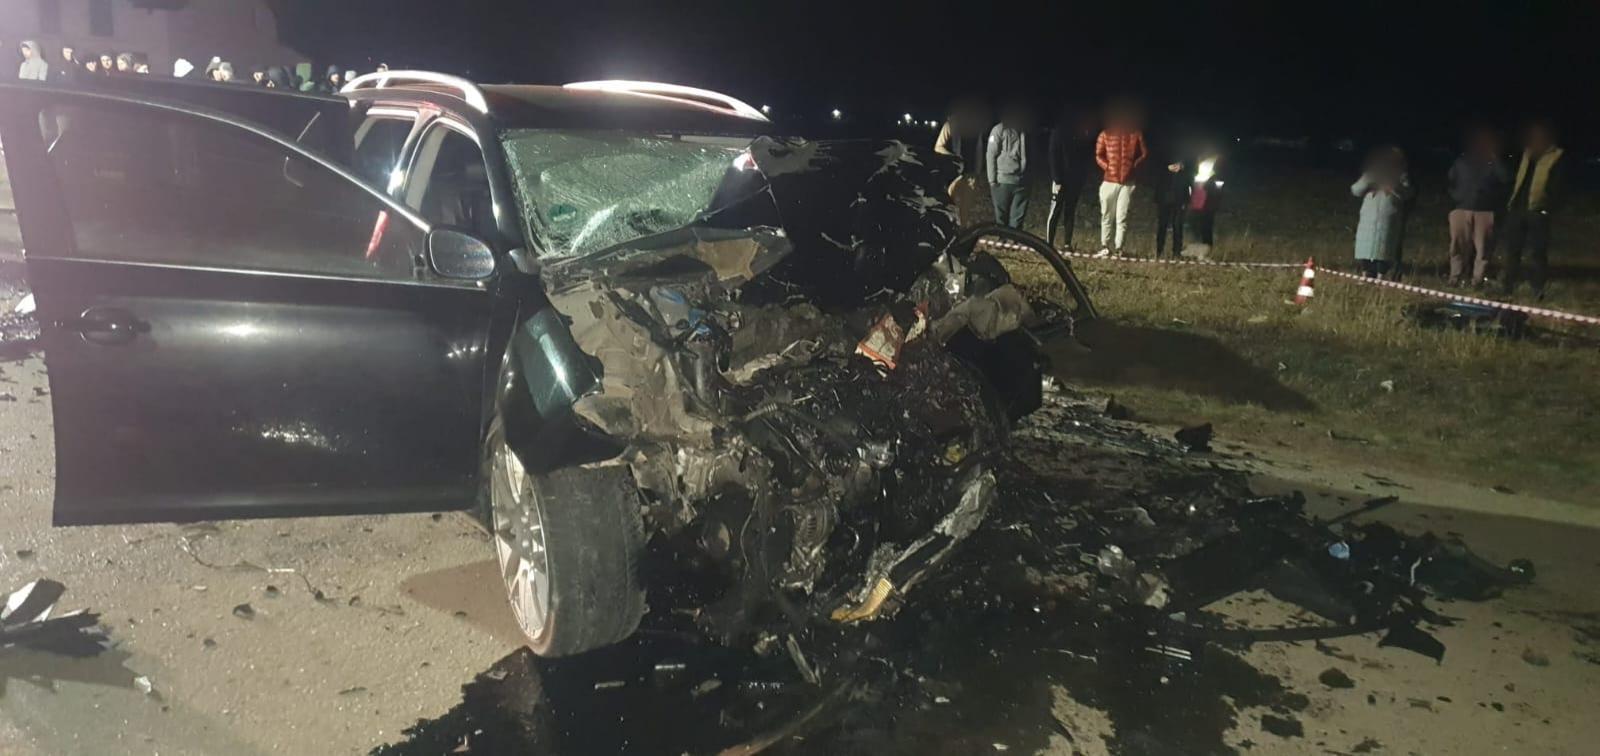 Tinerii care au provocat accidentul teribil din Dumbrăveni, unde o şoferiţă şi-a pierdut viaţa, au murit. Cei doi aveau 21 şi 17 ani